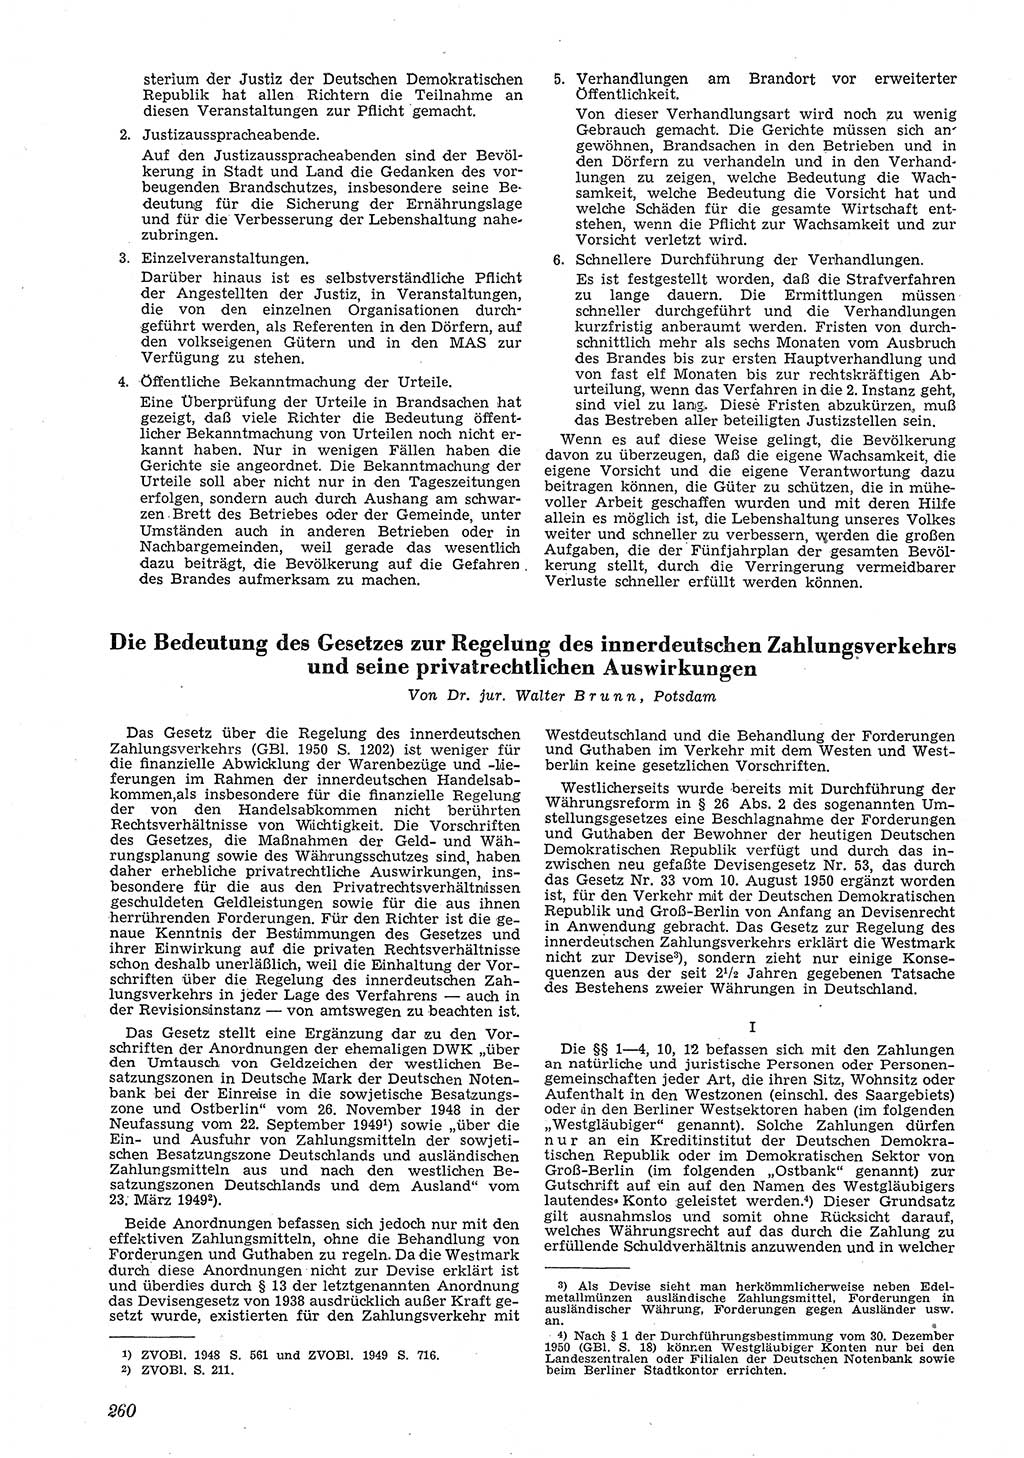 Neue Justiz (NJ), Zeitschrift für Recht und Rechtswissenschaft [Deutsche Demokratische Republik (DDR)], 5. Jahrgang 1951, Seite 260 (NJ DDR 1951, S. 260)